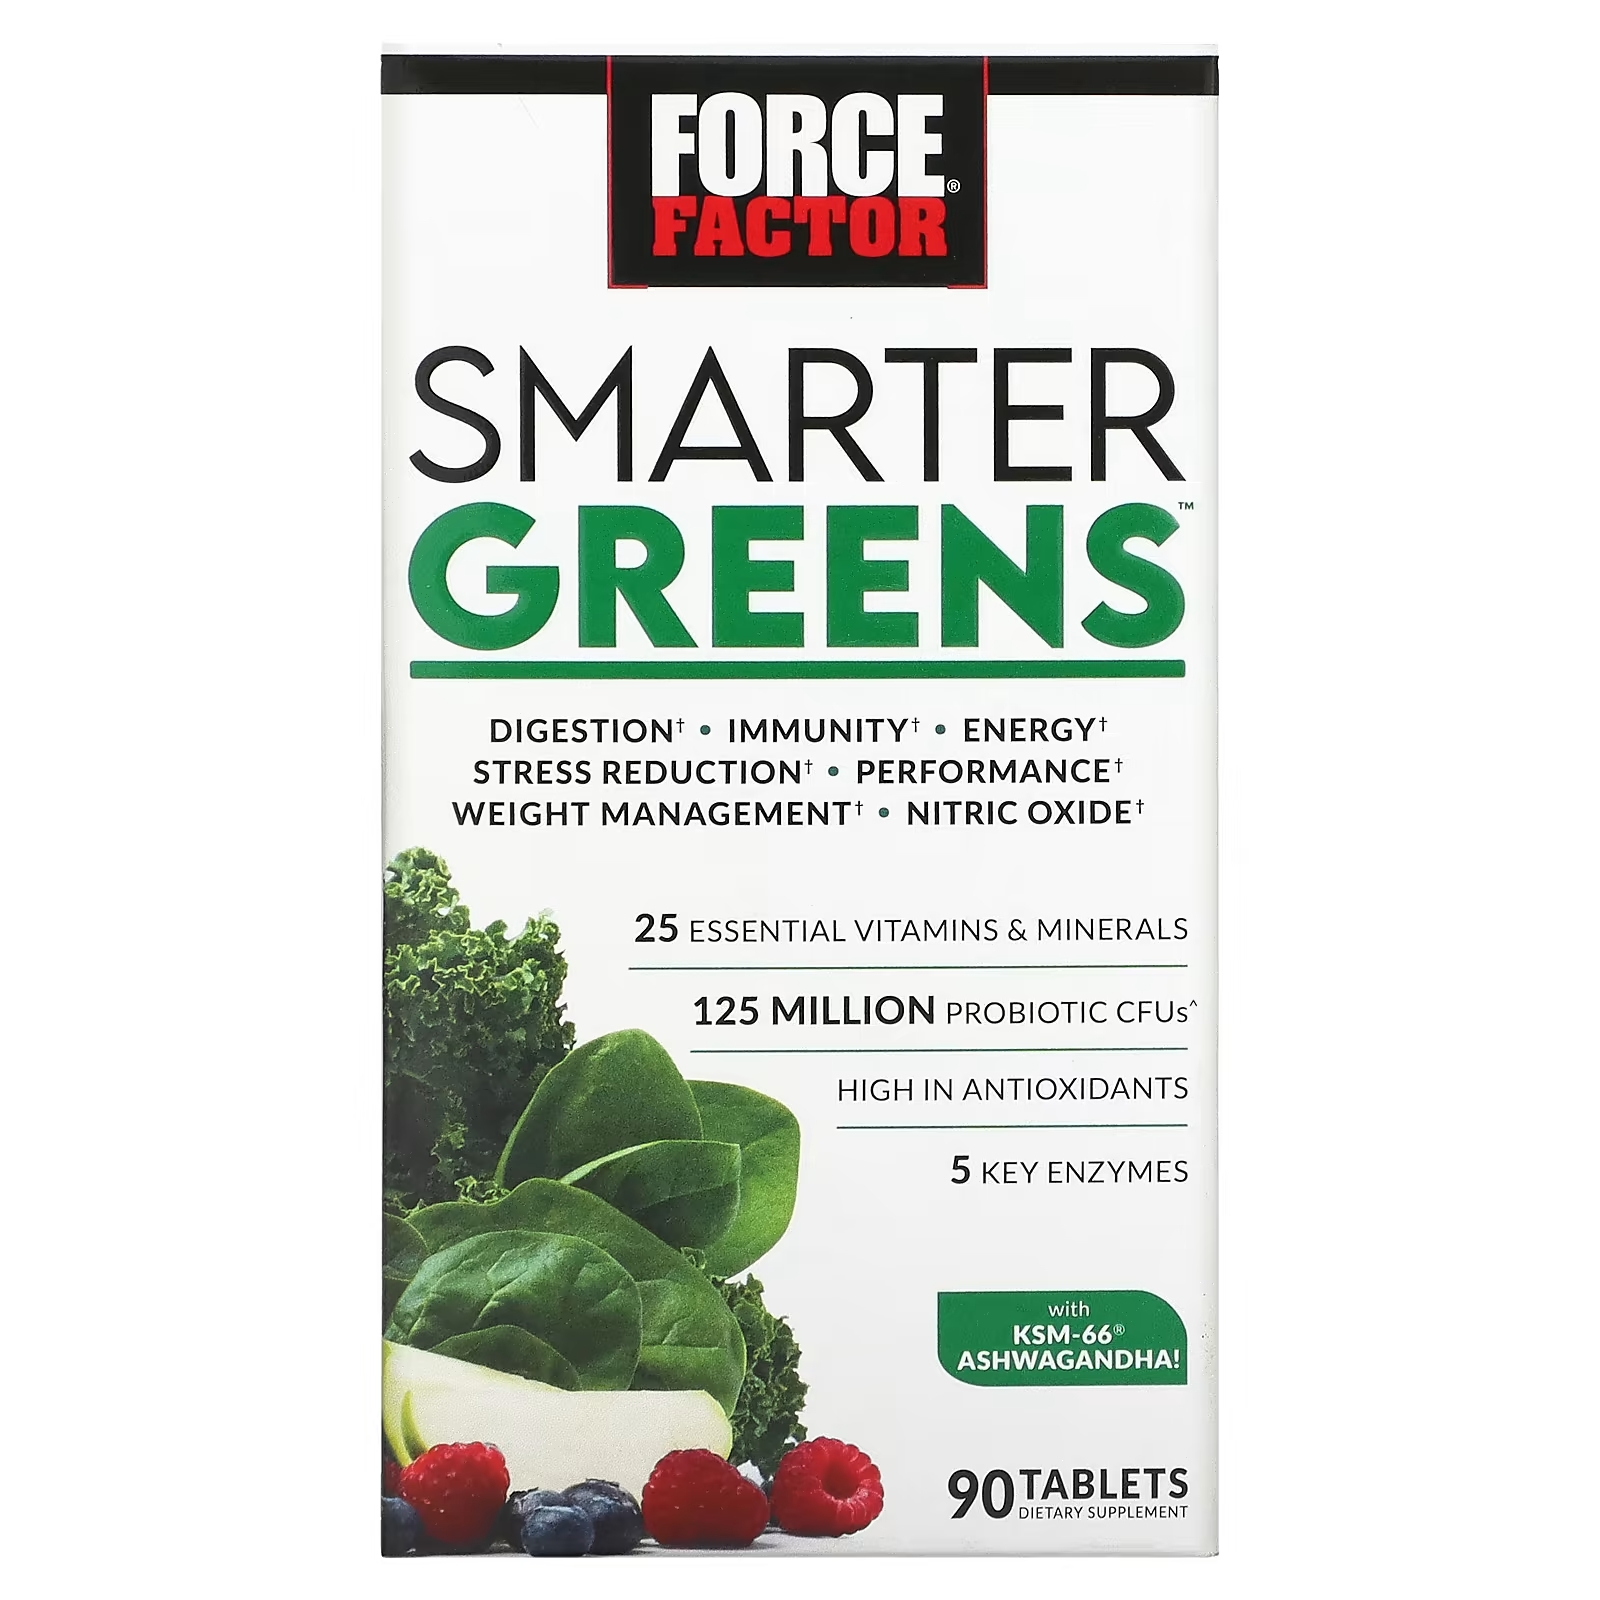 Травяная Добавка Force Factor Smarter Greens, 90 таблеток force factor smarter greens суперфуды и порошок для улучшения пищеварения гранат 419 г 14 8 унции